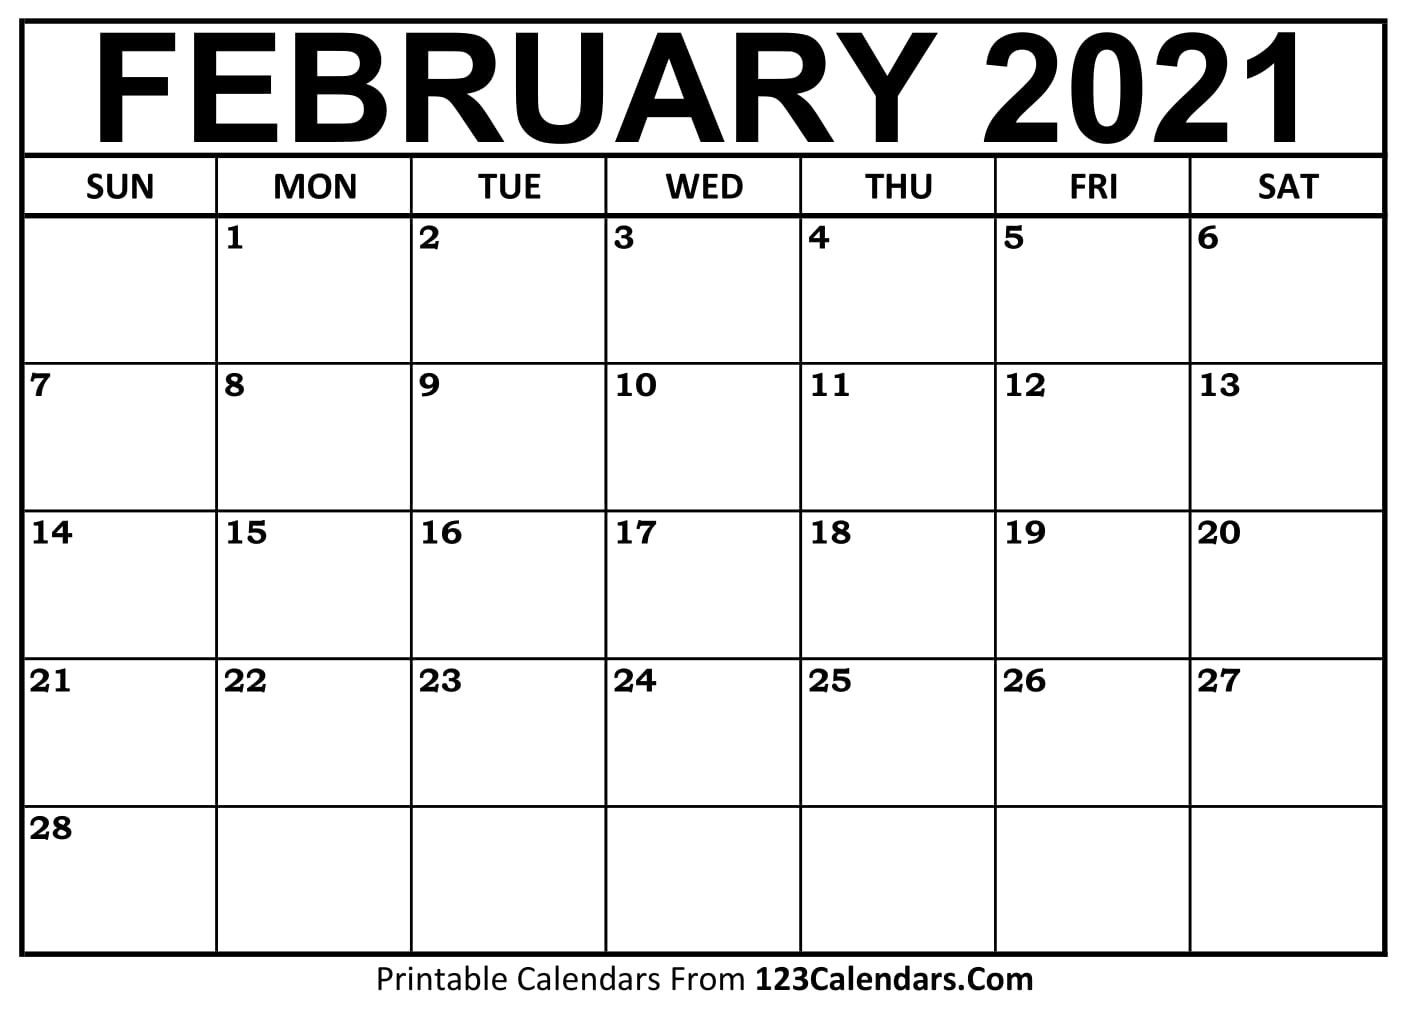 February Activities Calendar 2021 | Calendar Page-Printable Calendar February 2021 Pdf